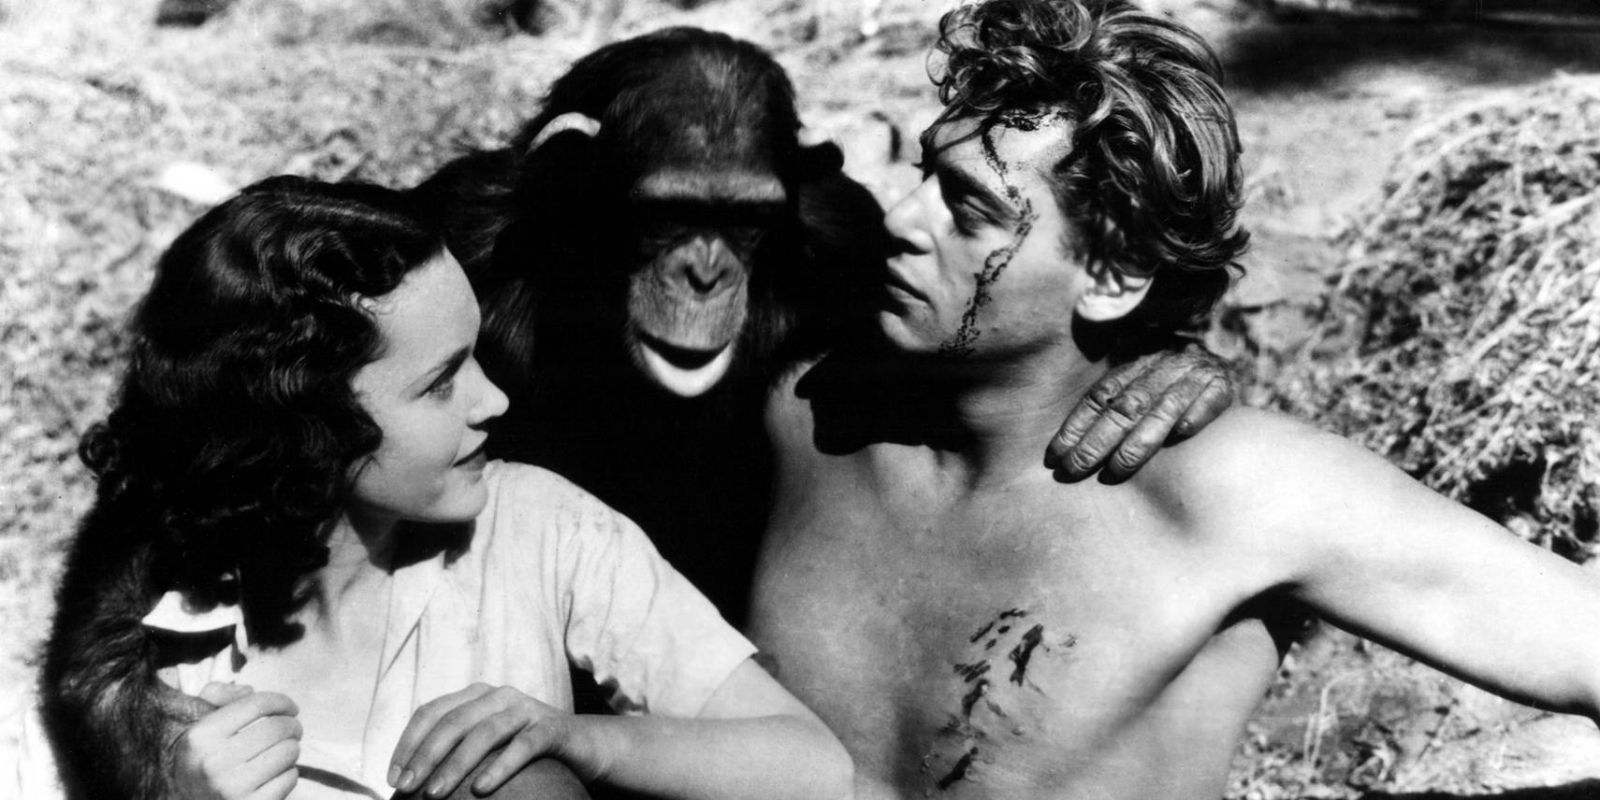 Tarzan and Jane with a monkey in Tarzan the ape man